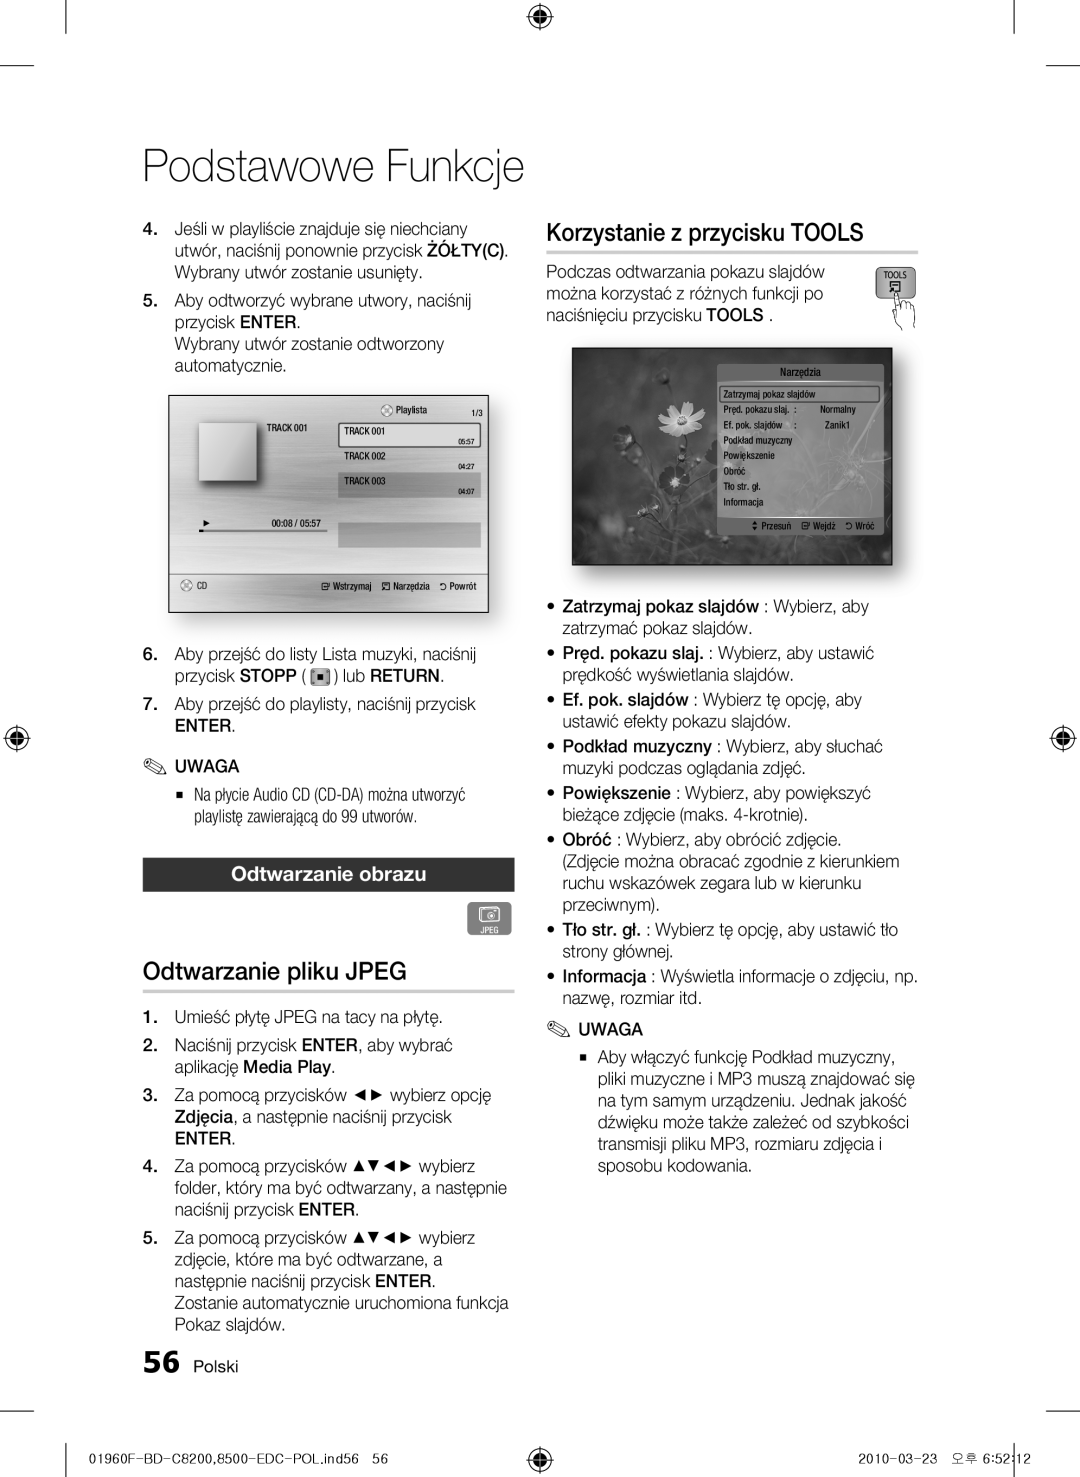 Samsung BD-C8500/EDC manual Korzystanie z przycisku TOOLS, Odtwarzanie pliku JPEG, Odtwarzanie obrazu, Podstawowe Funkcje 